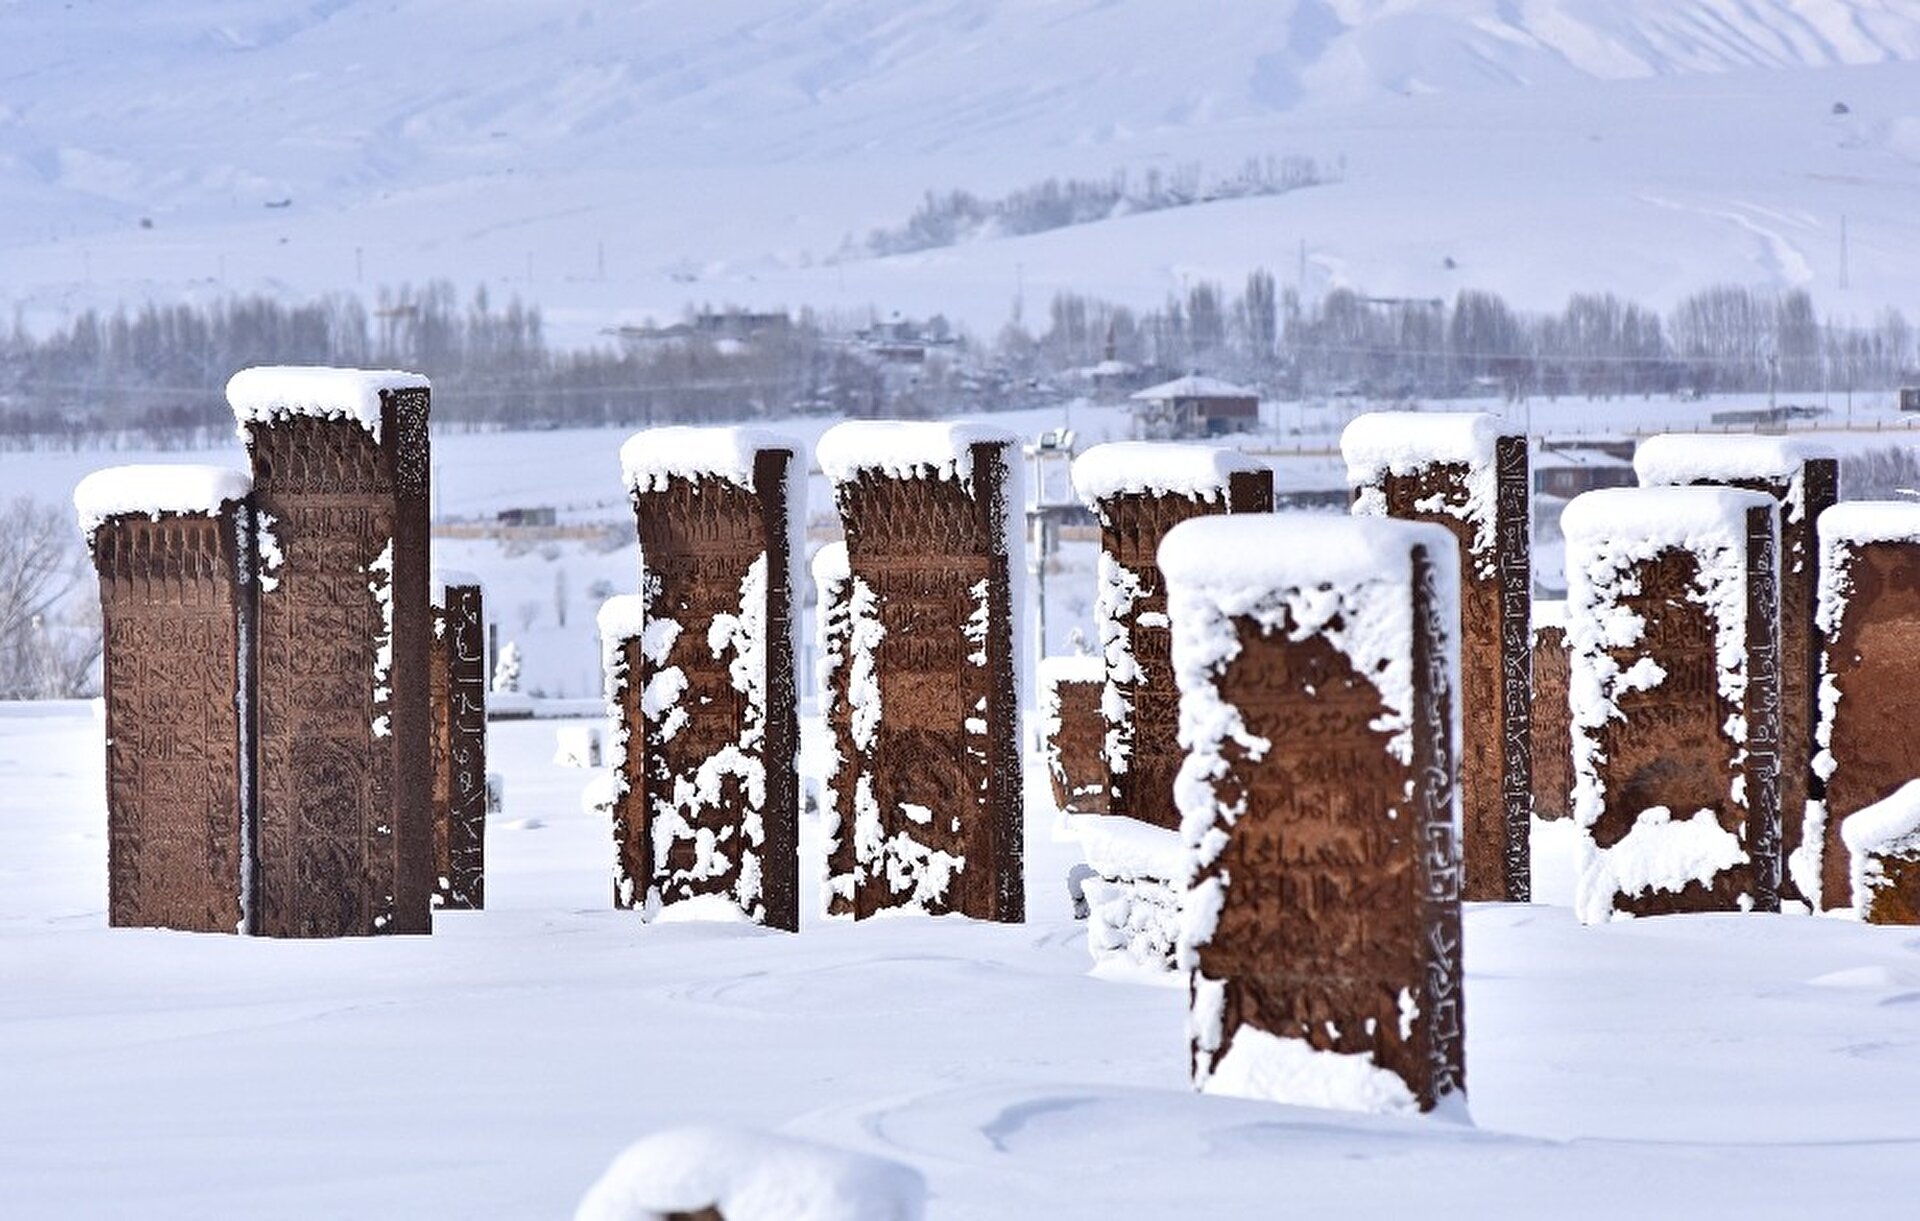 Snow turns Turkey's historical Ahlat into winter wonderland